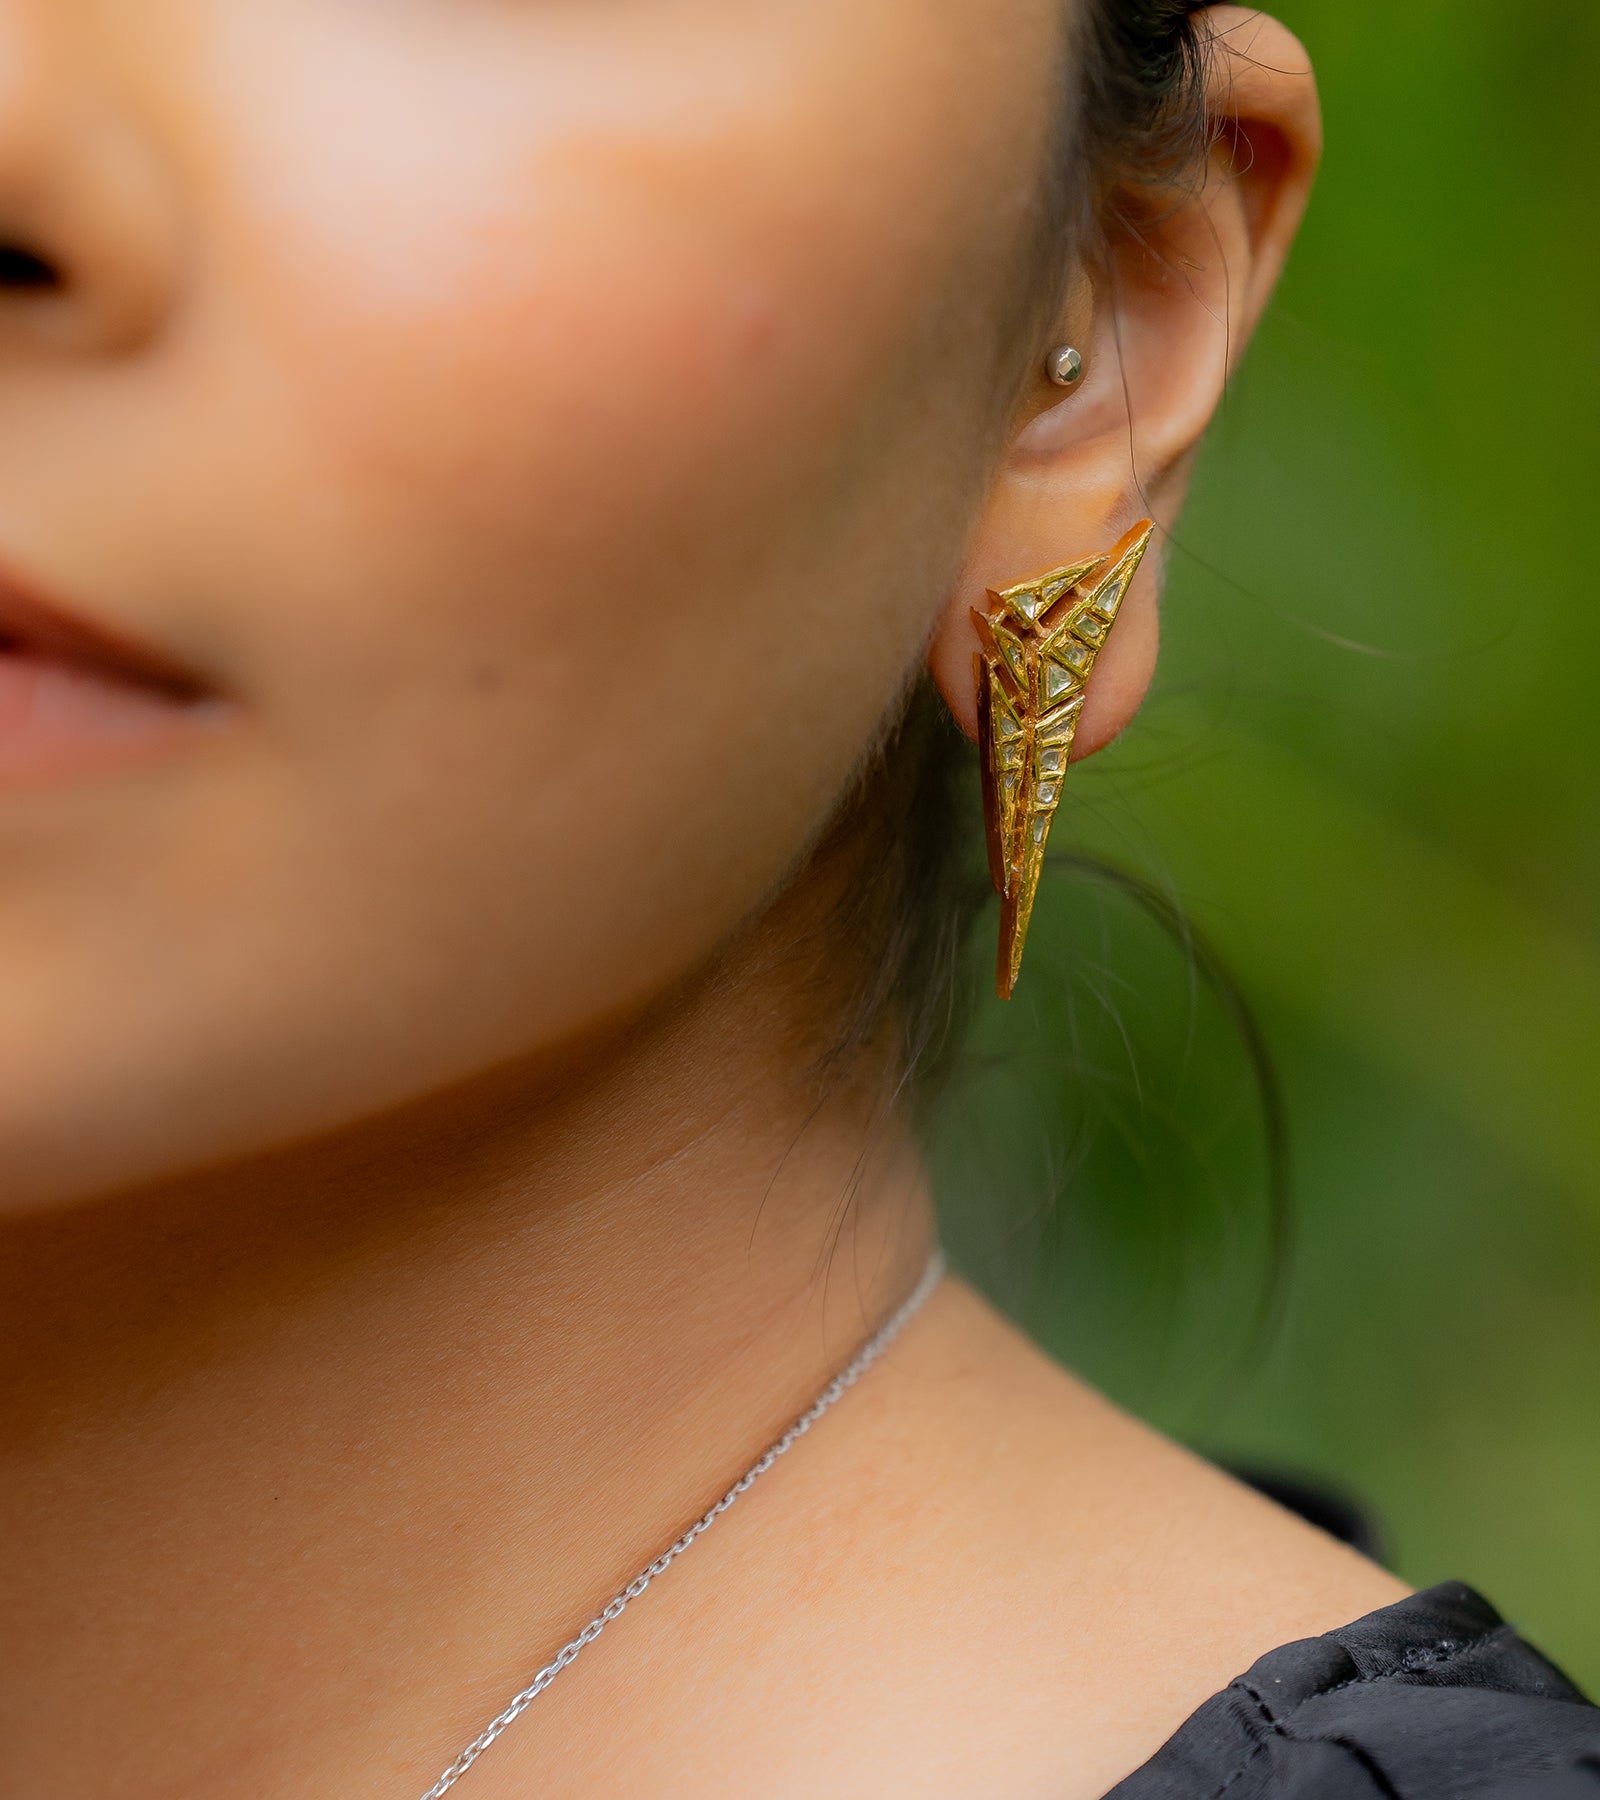 Statement Earrings by UNCUT Jewelry